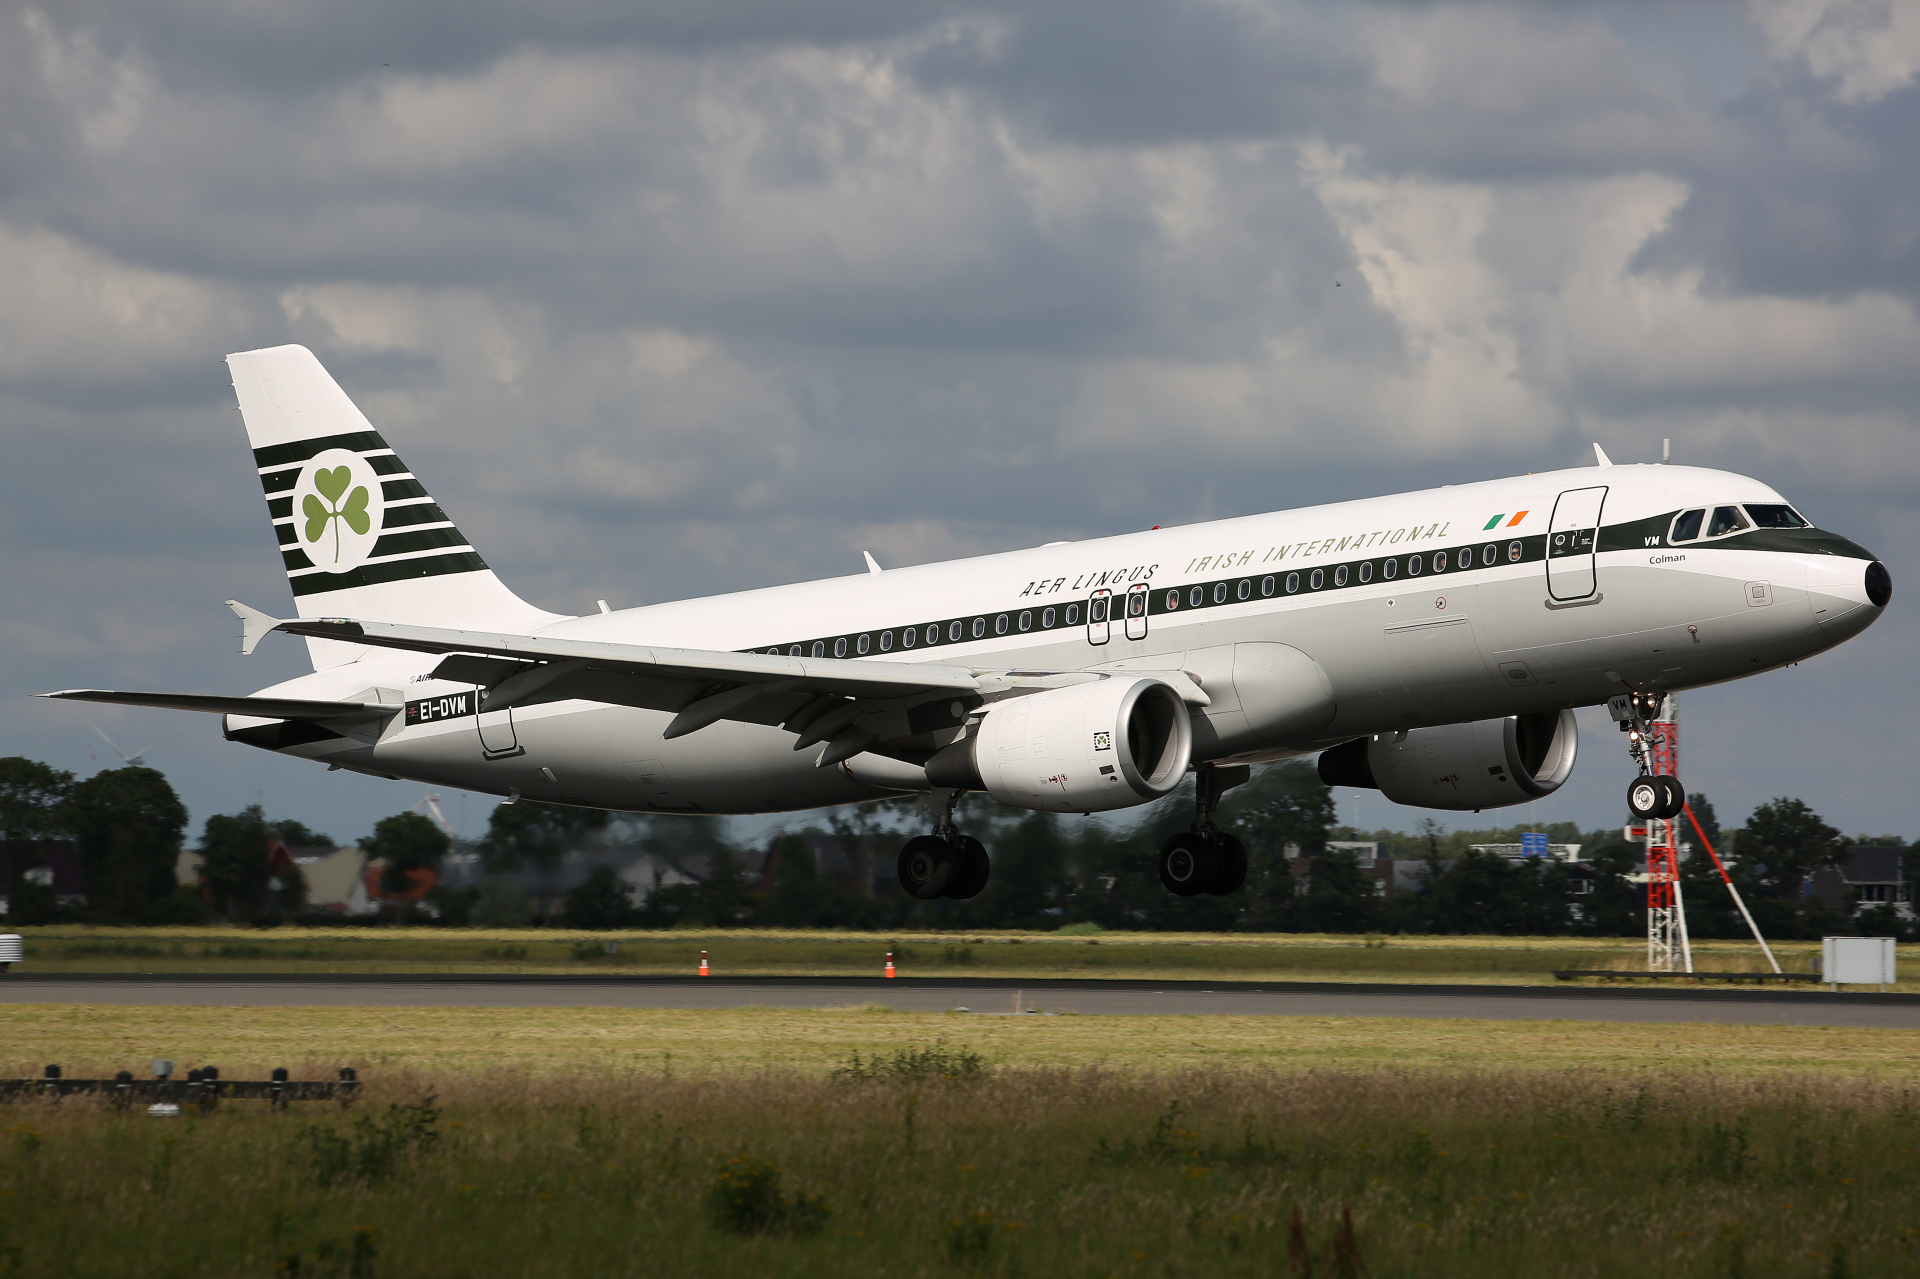 EI-DVM, Aer Lingus (retro livery) (Aircraft » Schiphol Spotting » Airbus A320-200)